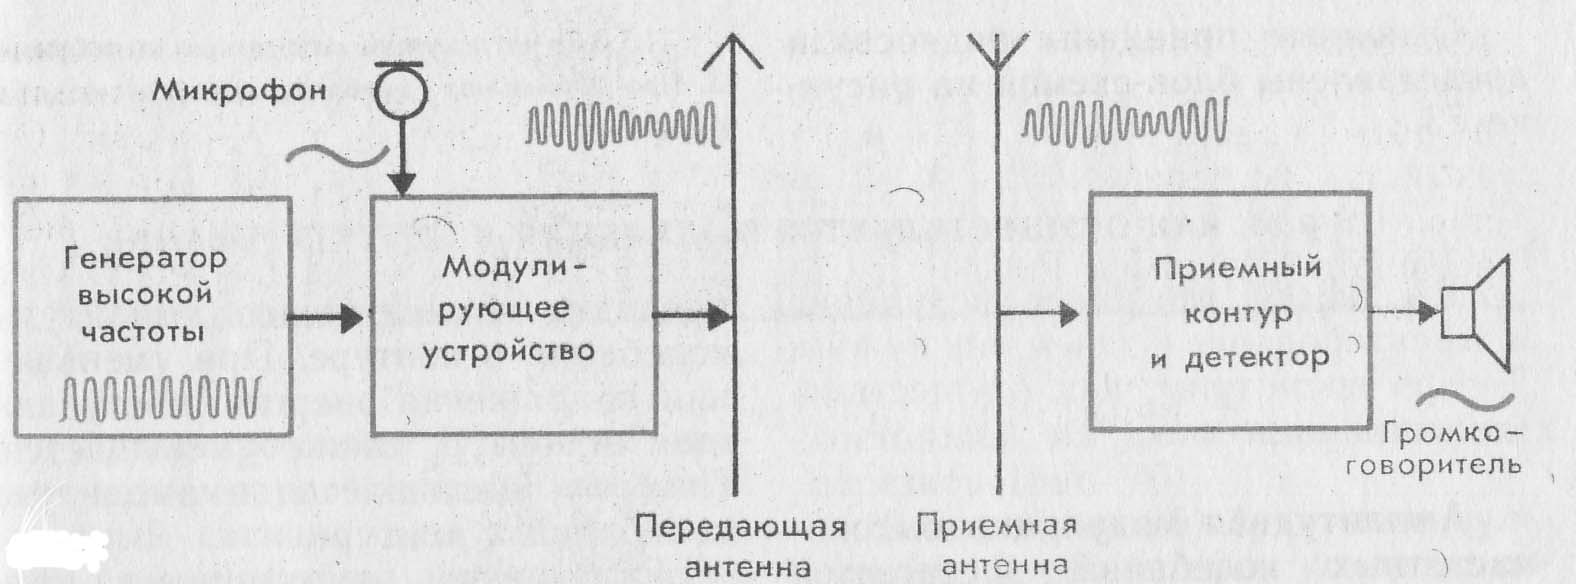 Методическая разработка Изобретение радио А.С. Поповым. Амплитудная модуляция и детектирование. Простейший радиоприемник. Телевидение. Радиолокация».